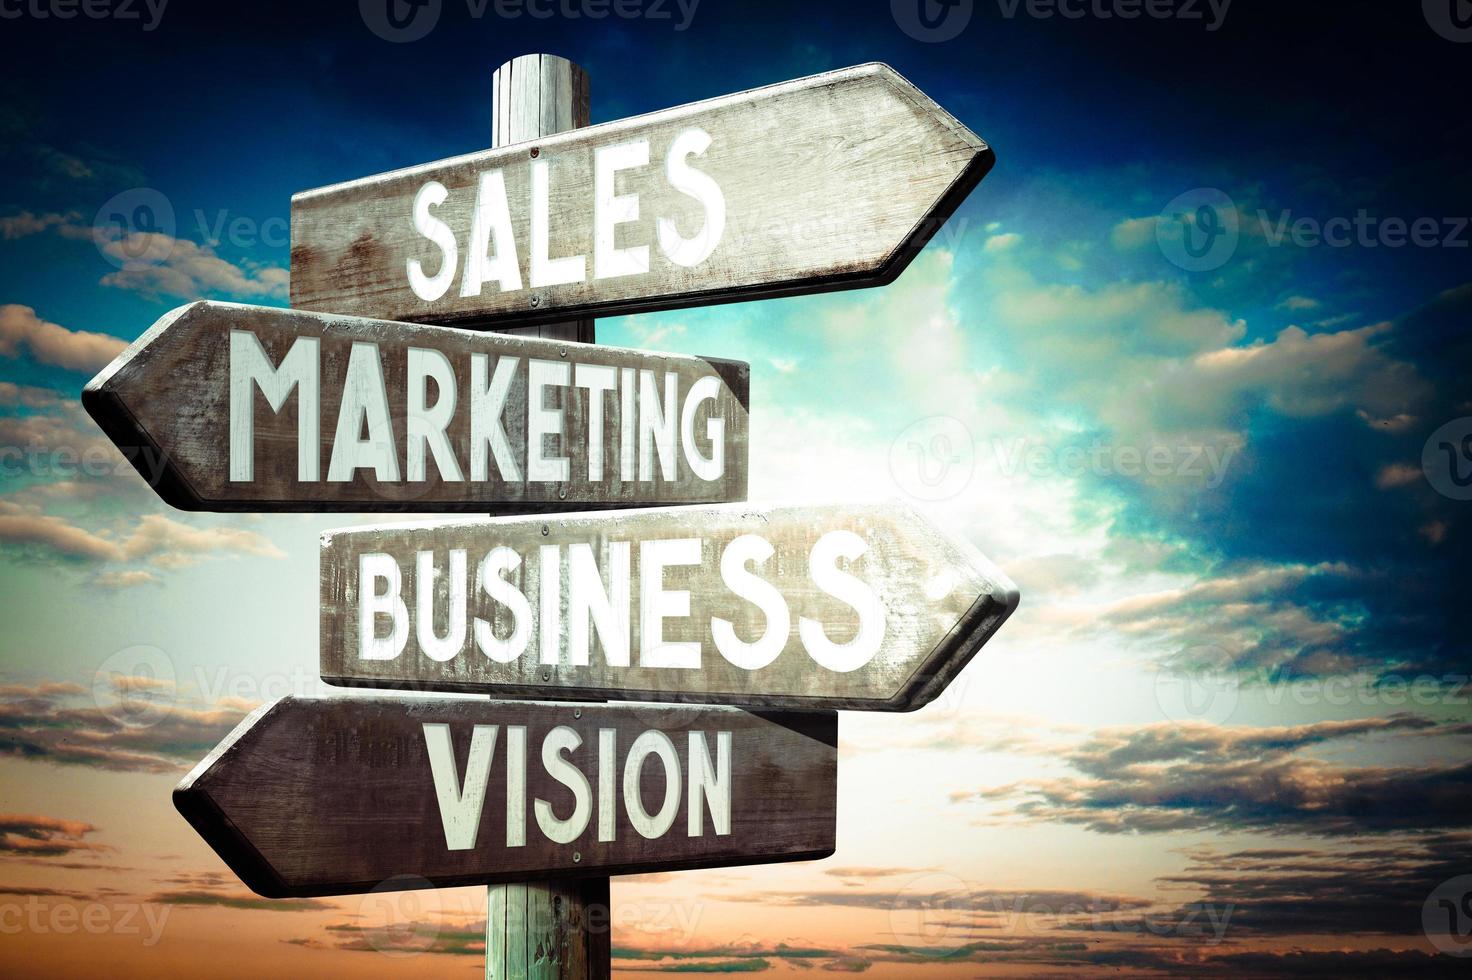 Verkauf, Marketing, Geschäft, Vision - - hölzern Wegweiser mit vier Pfeile, Sonnenuntergang Himmel im Hintergrund foto